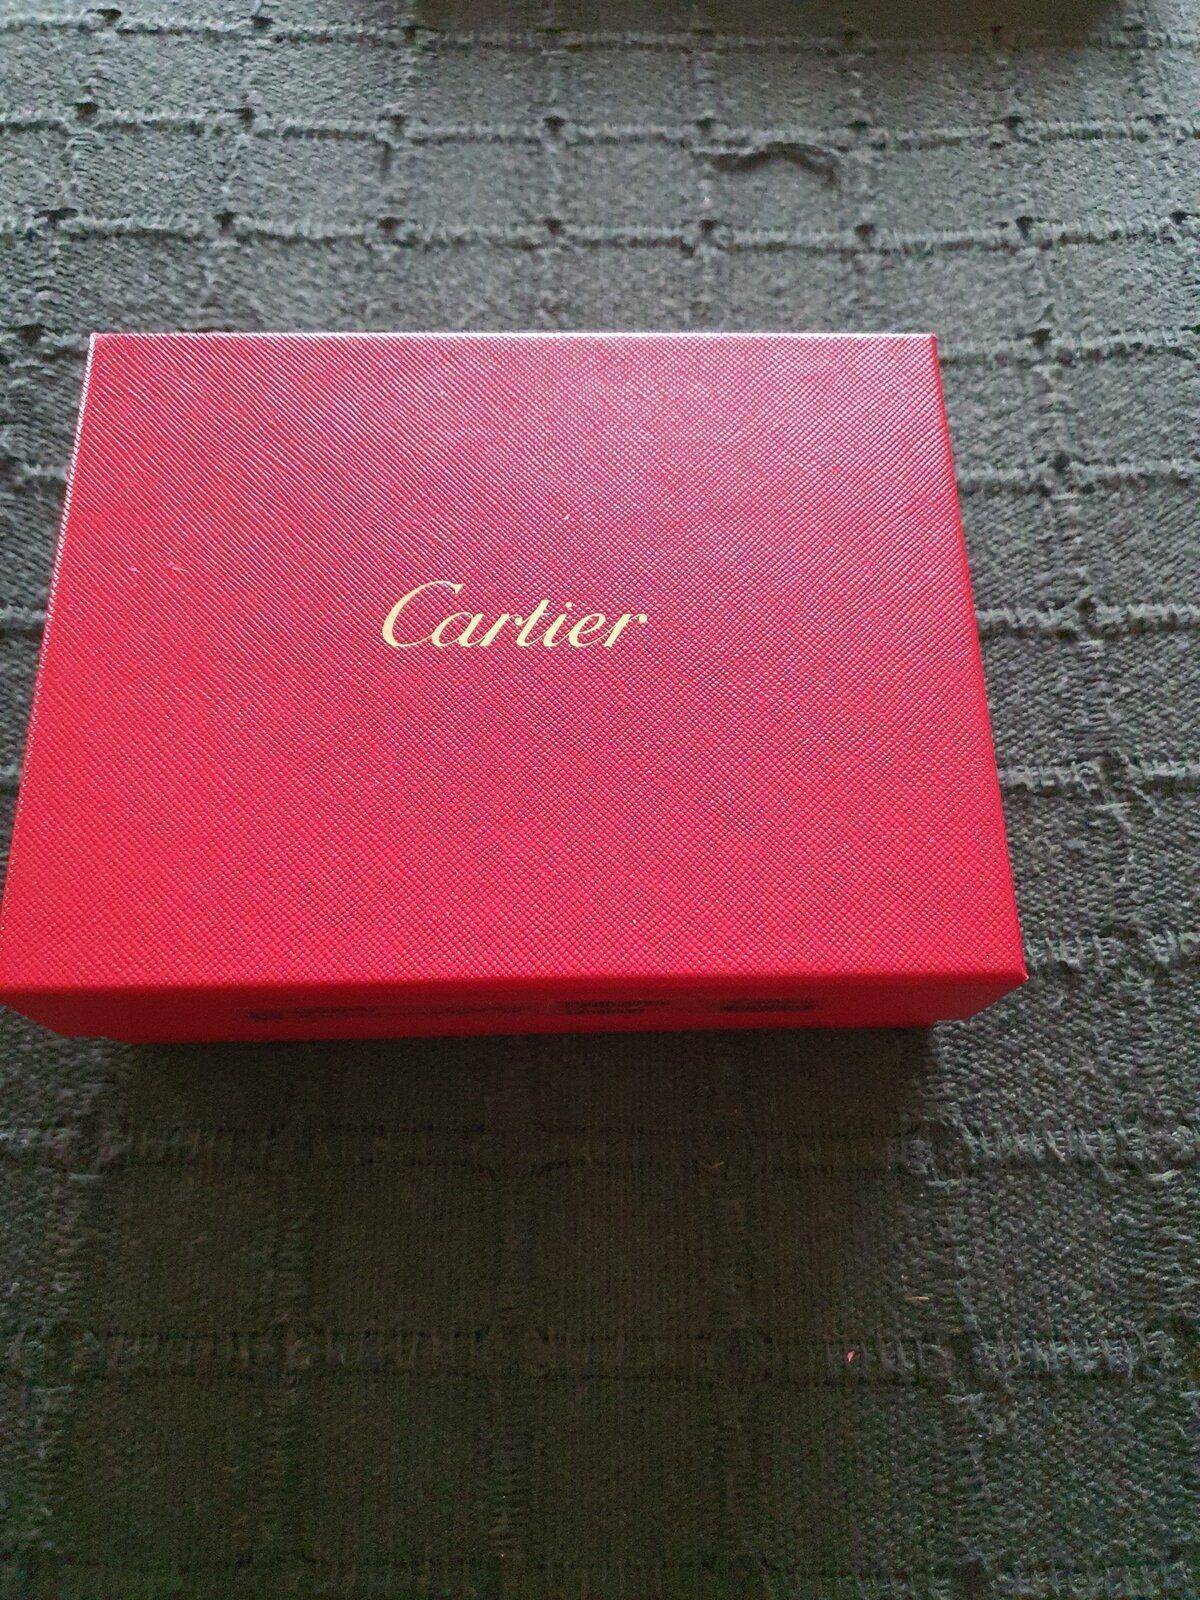 Cartera Cartier hombre Relojes Especiales, EL foro de